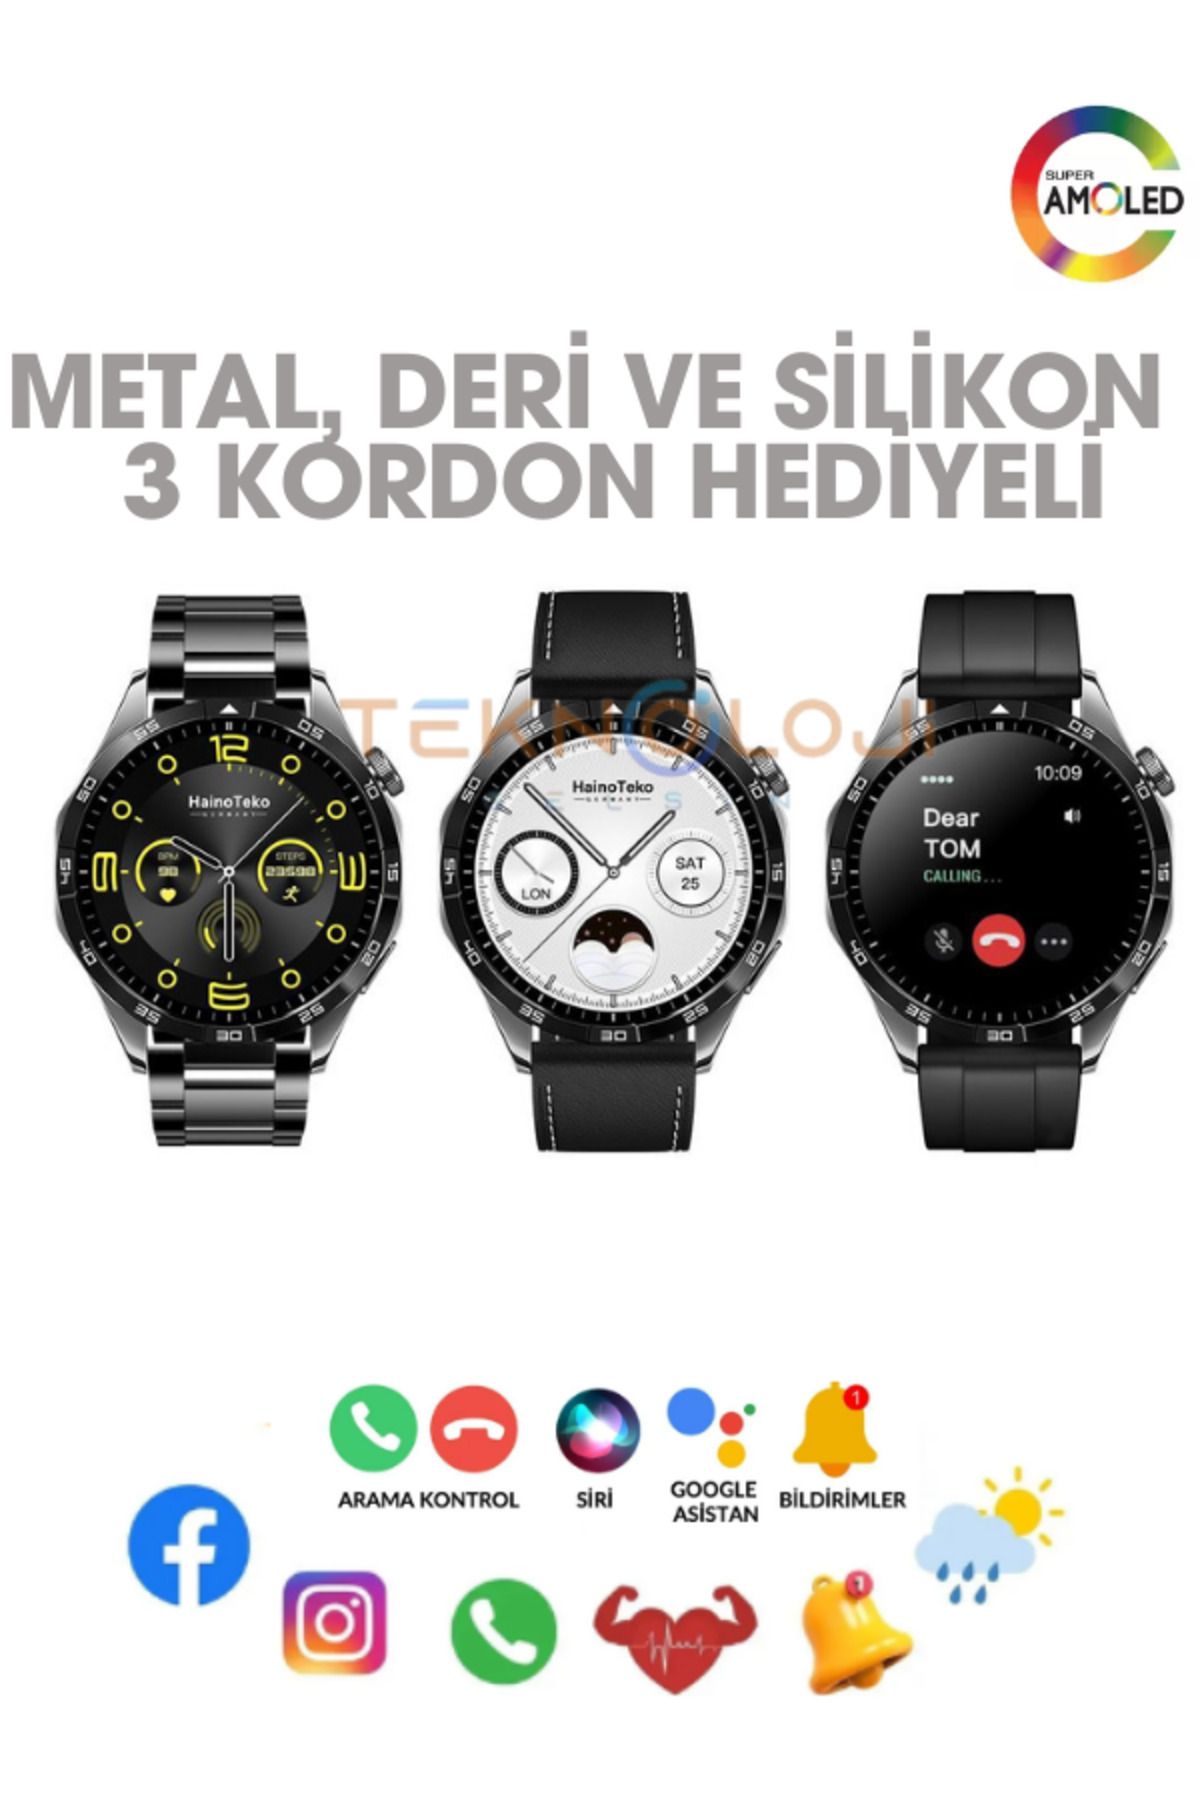 Teknoloji Gelsin GT4 Akıllı Saat Yuvarlak Kasa Amoled Ekran Smart Watch Türkçe Menü Ios ve Android Uyum 3 Kordonlu